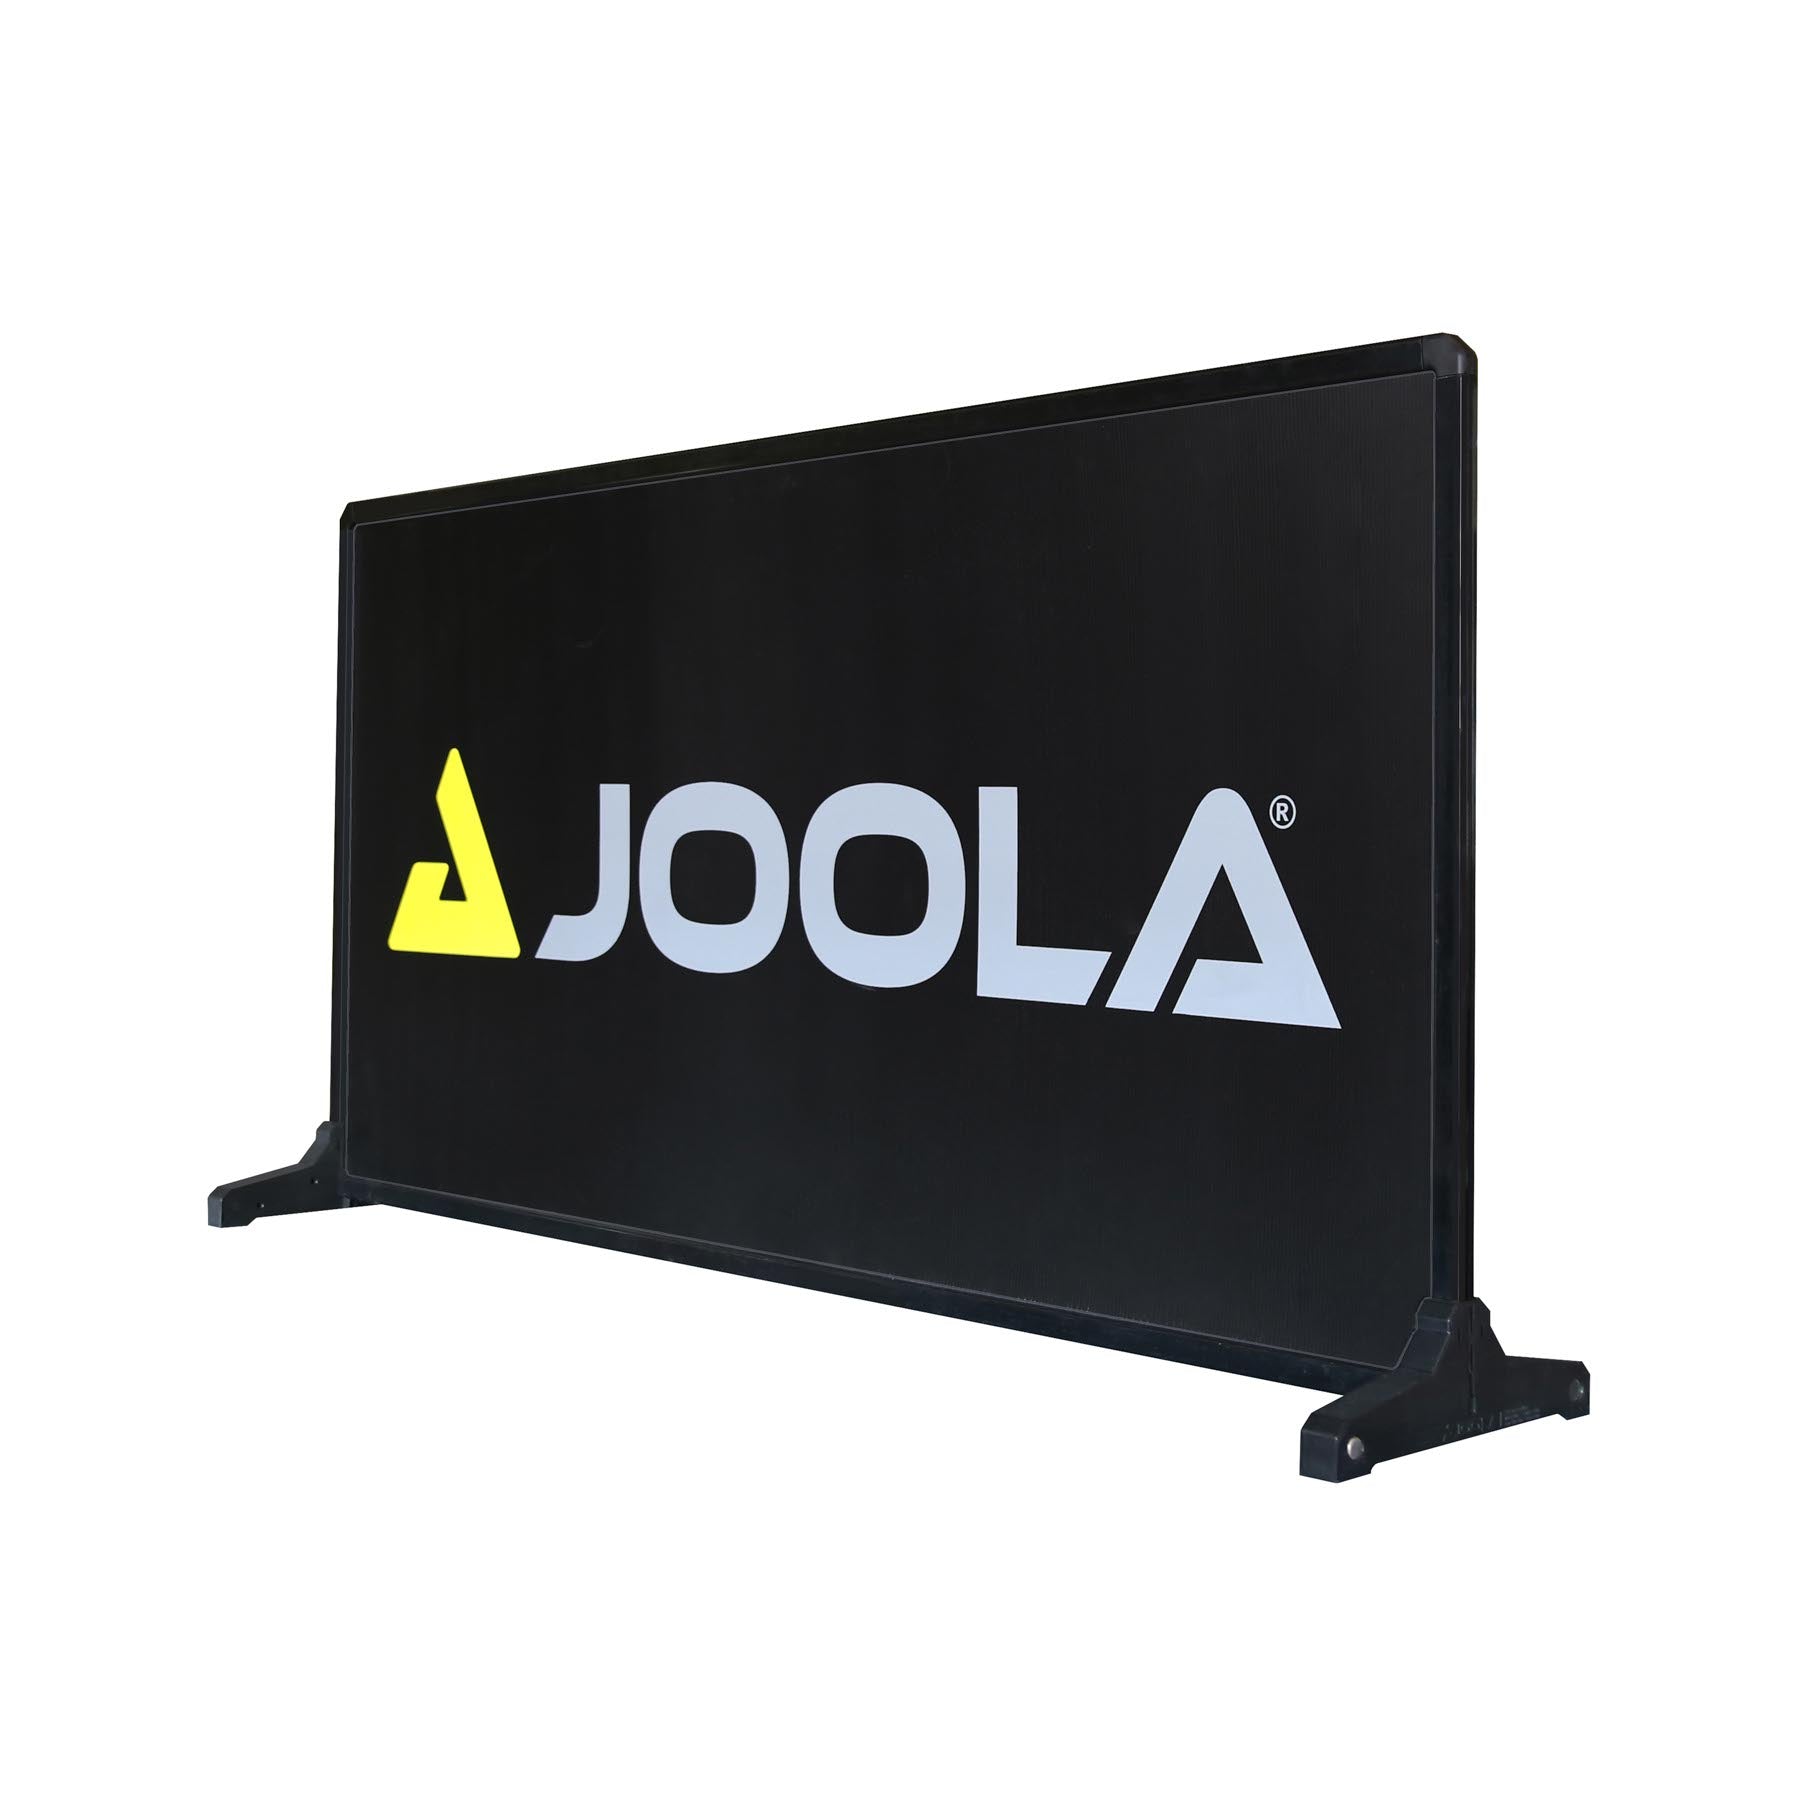 TT Store Tischtennis Joola - Pro Barrier